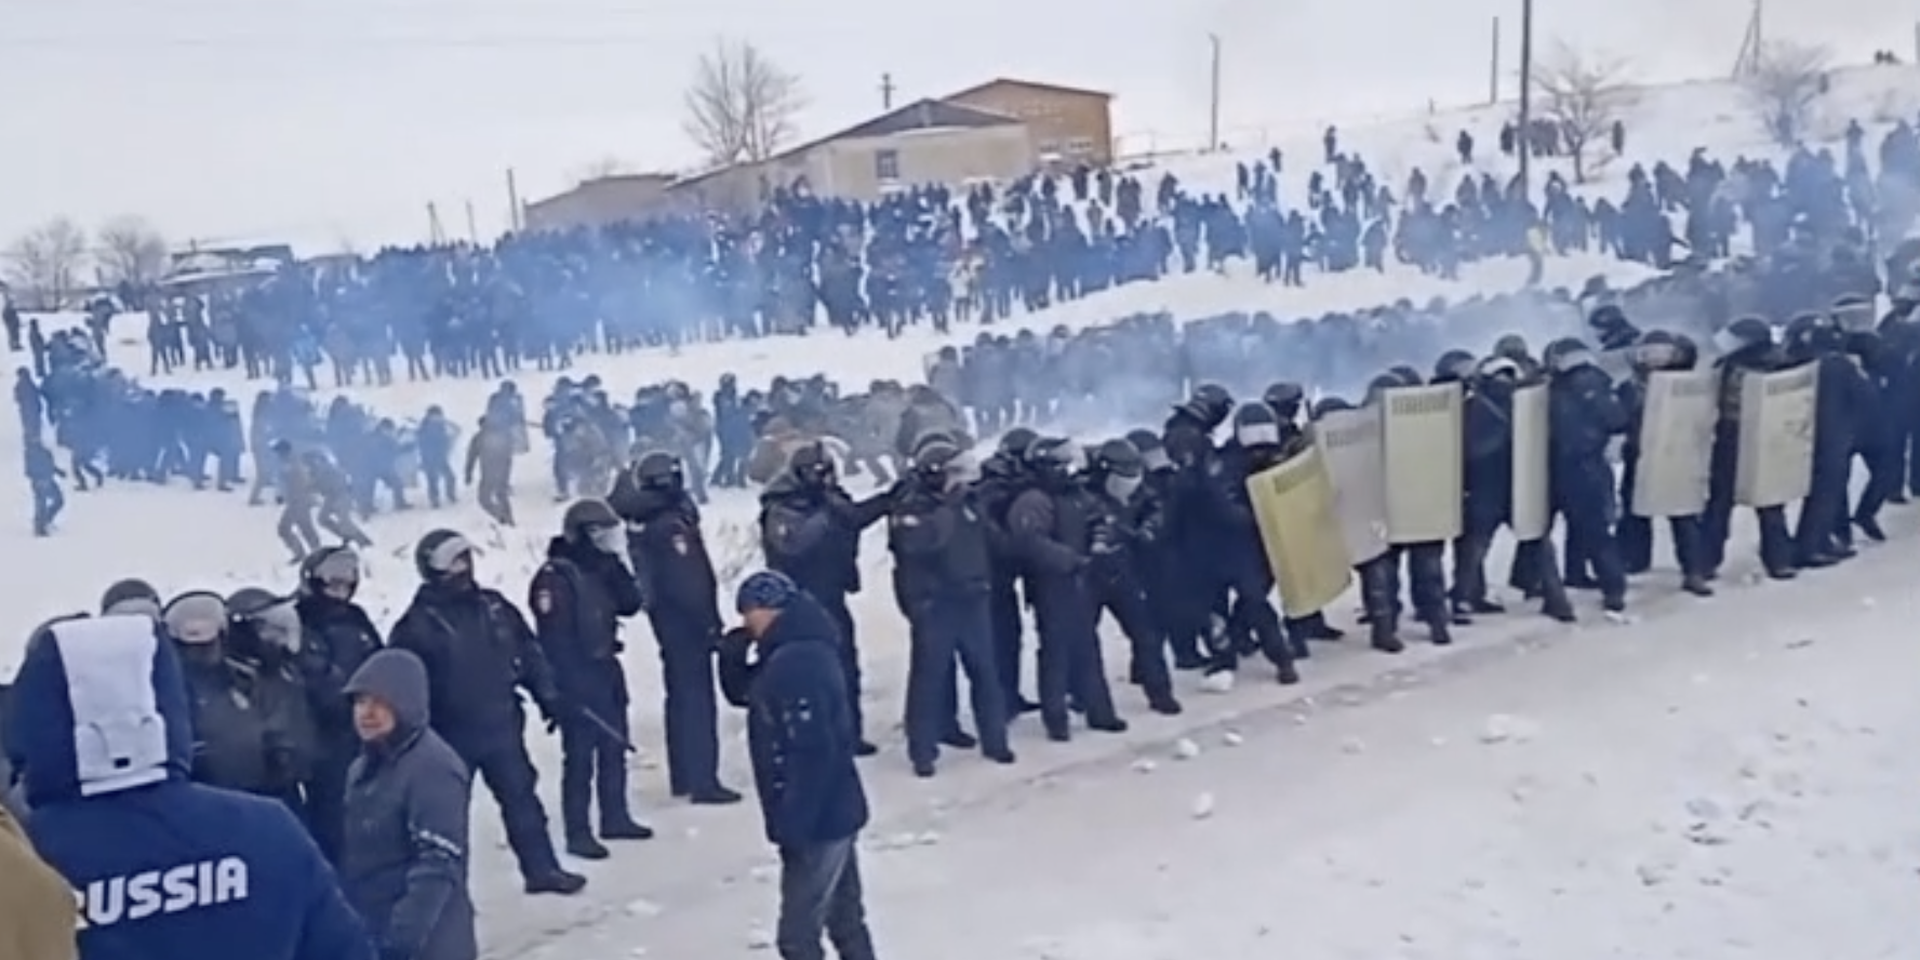 Несколько тысяч человек вышли к суду в Башкирии в поддержку осужденного активиста. СК возбудил дела о массовых беспорядках и насилии над полицией